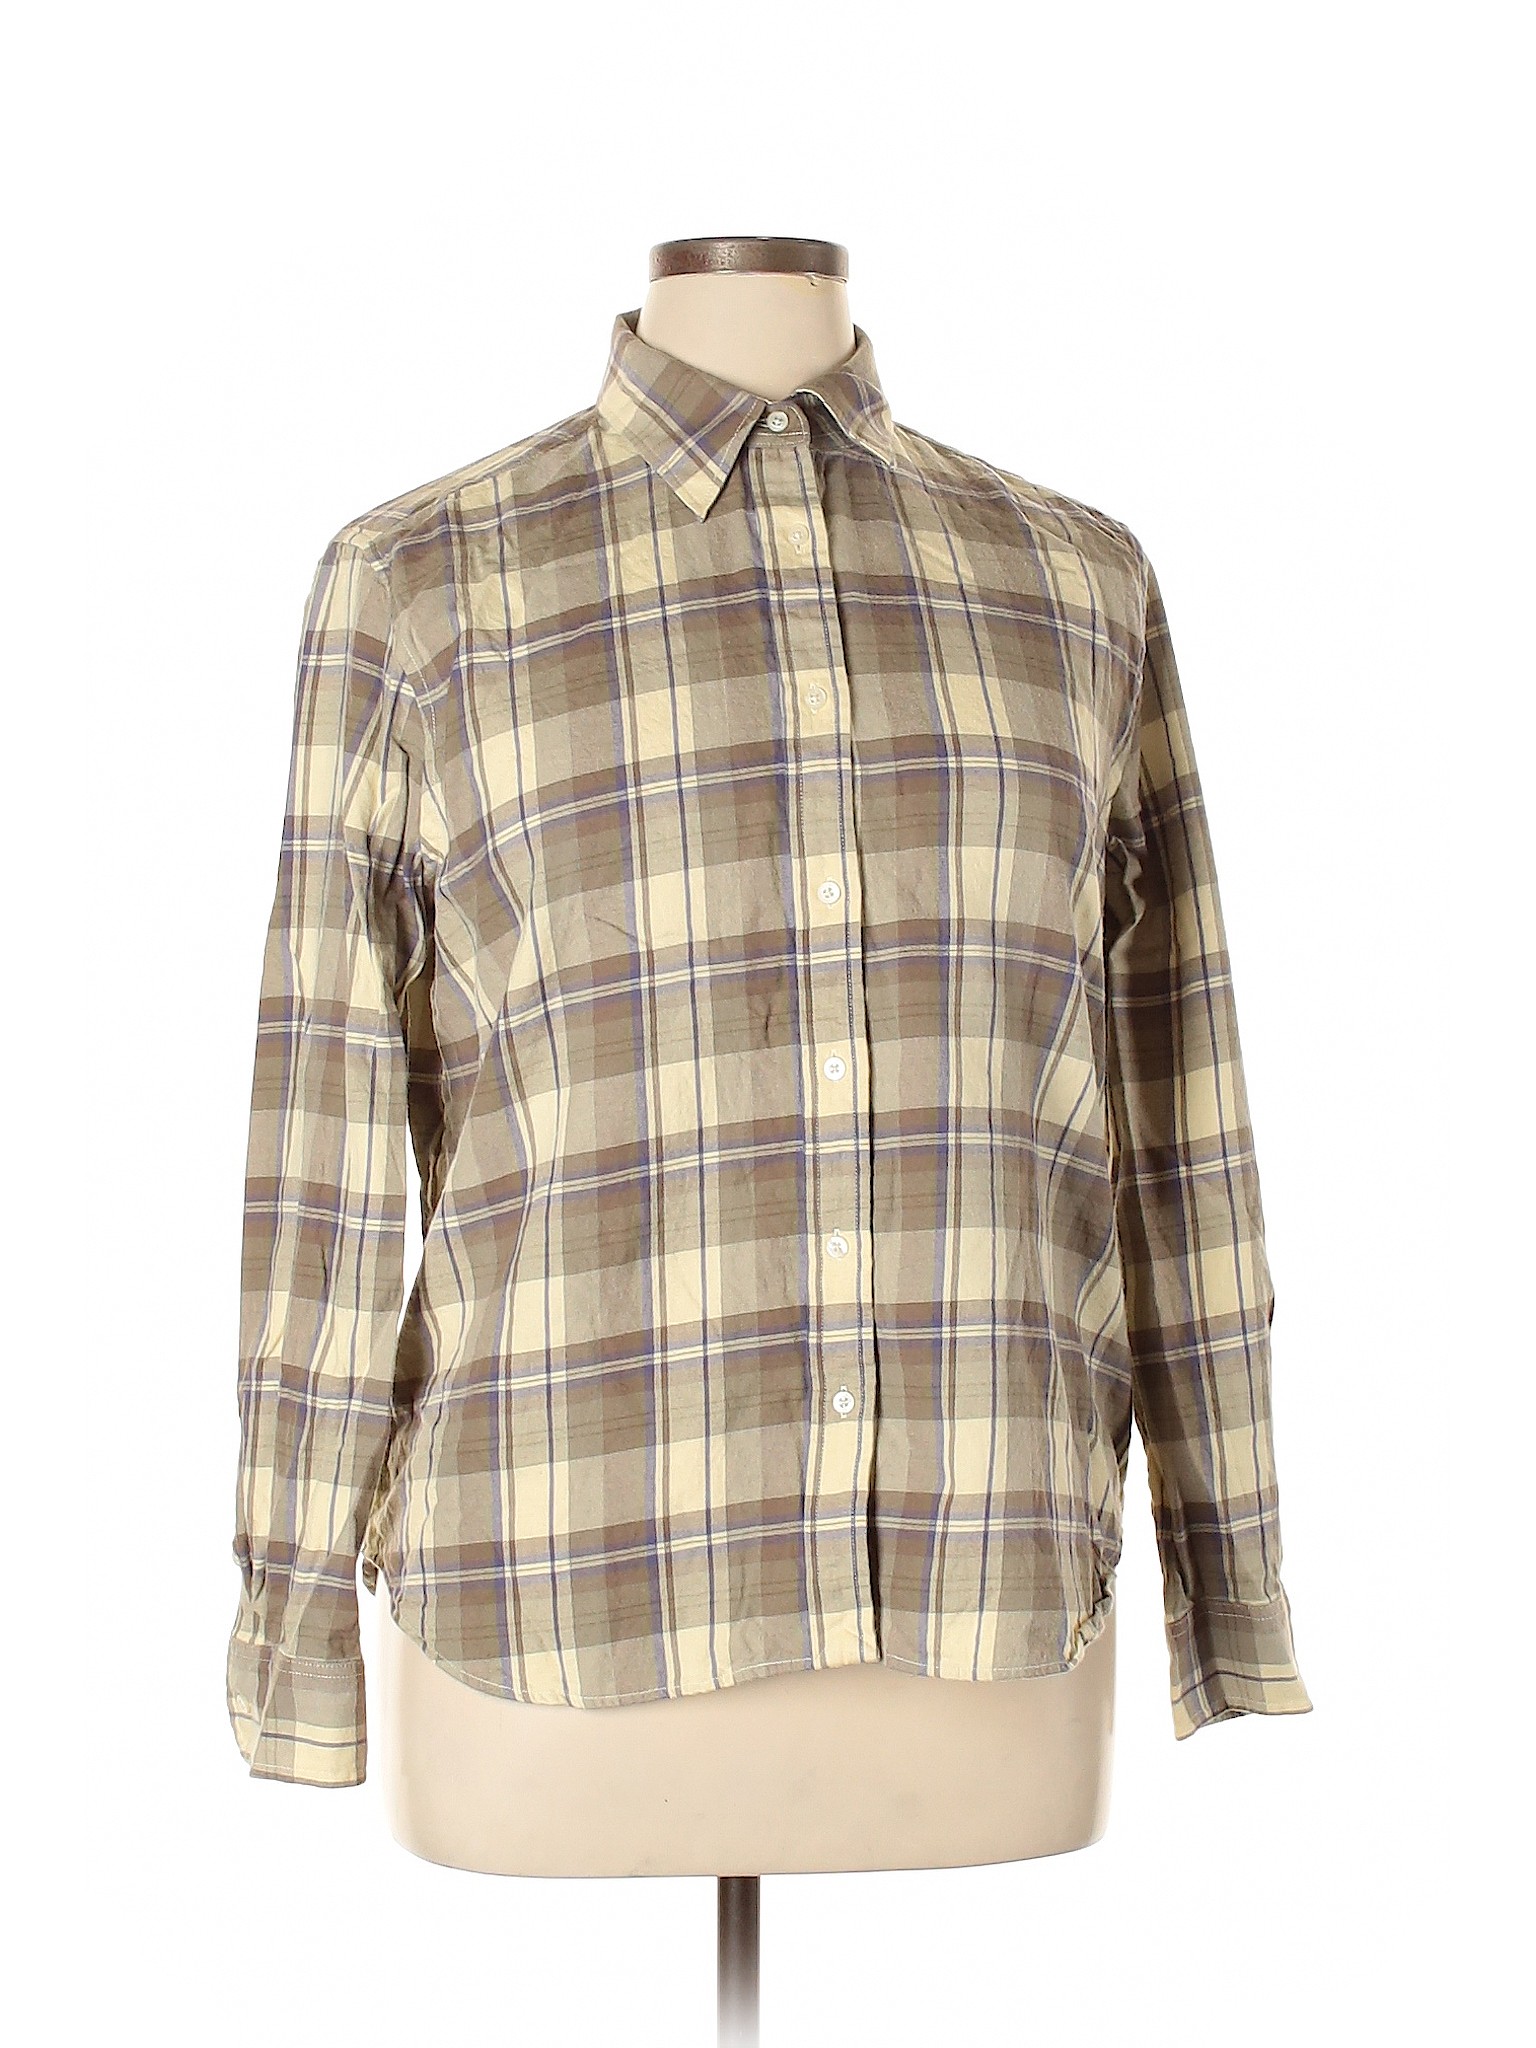 Lauren by Ralph Lauren Women Brown Long Sleeve Button-Down Shirt XL | eBay